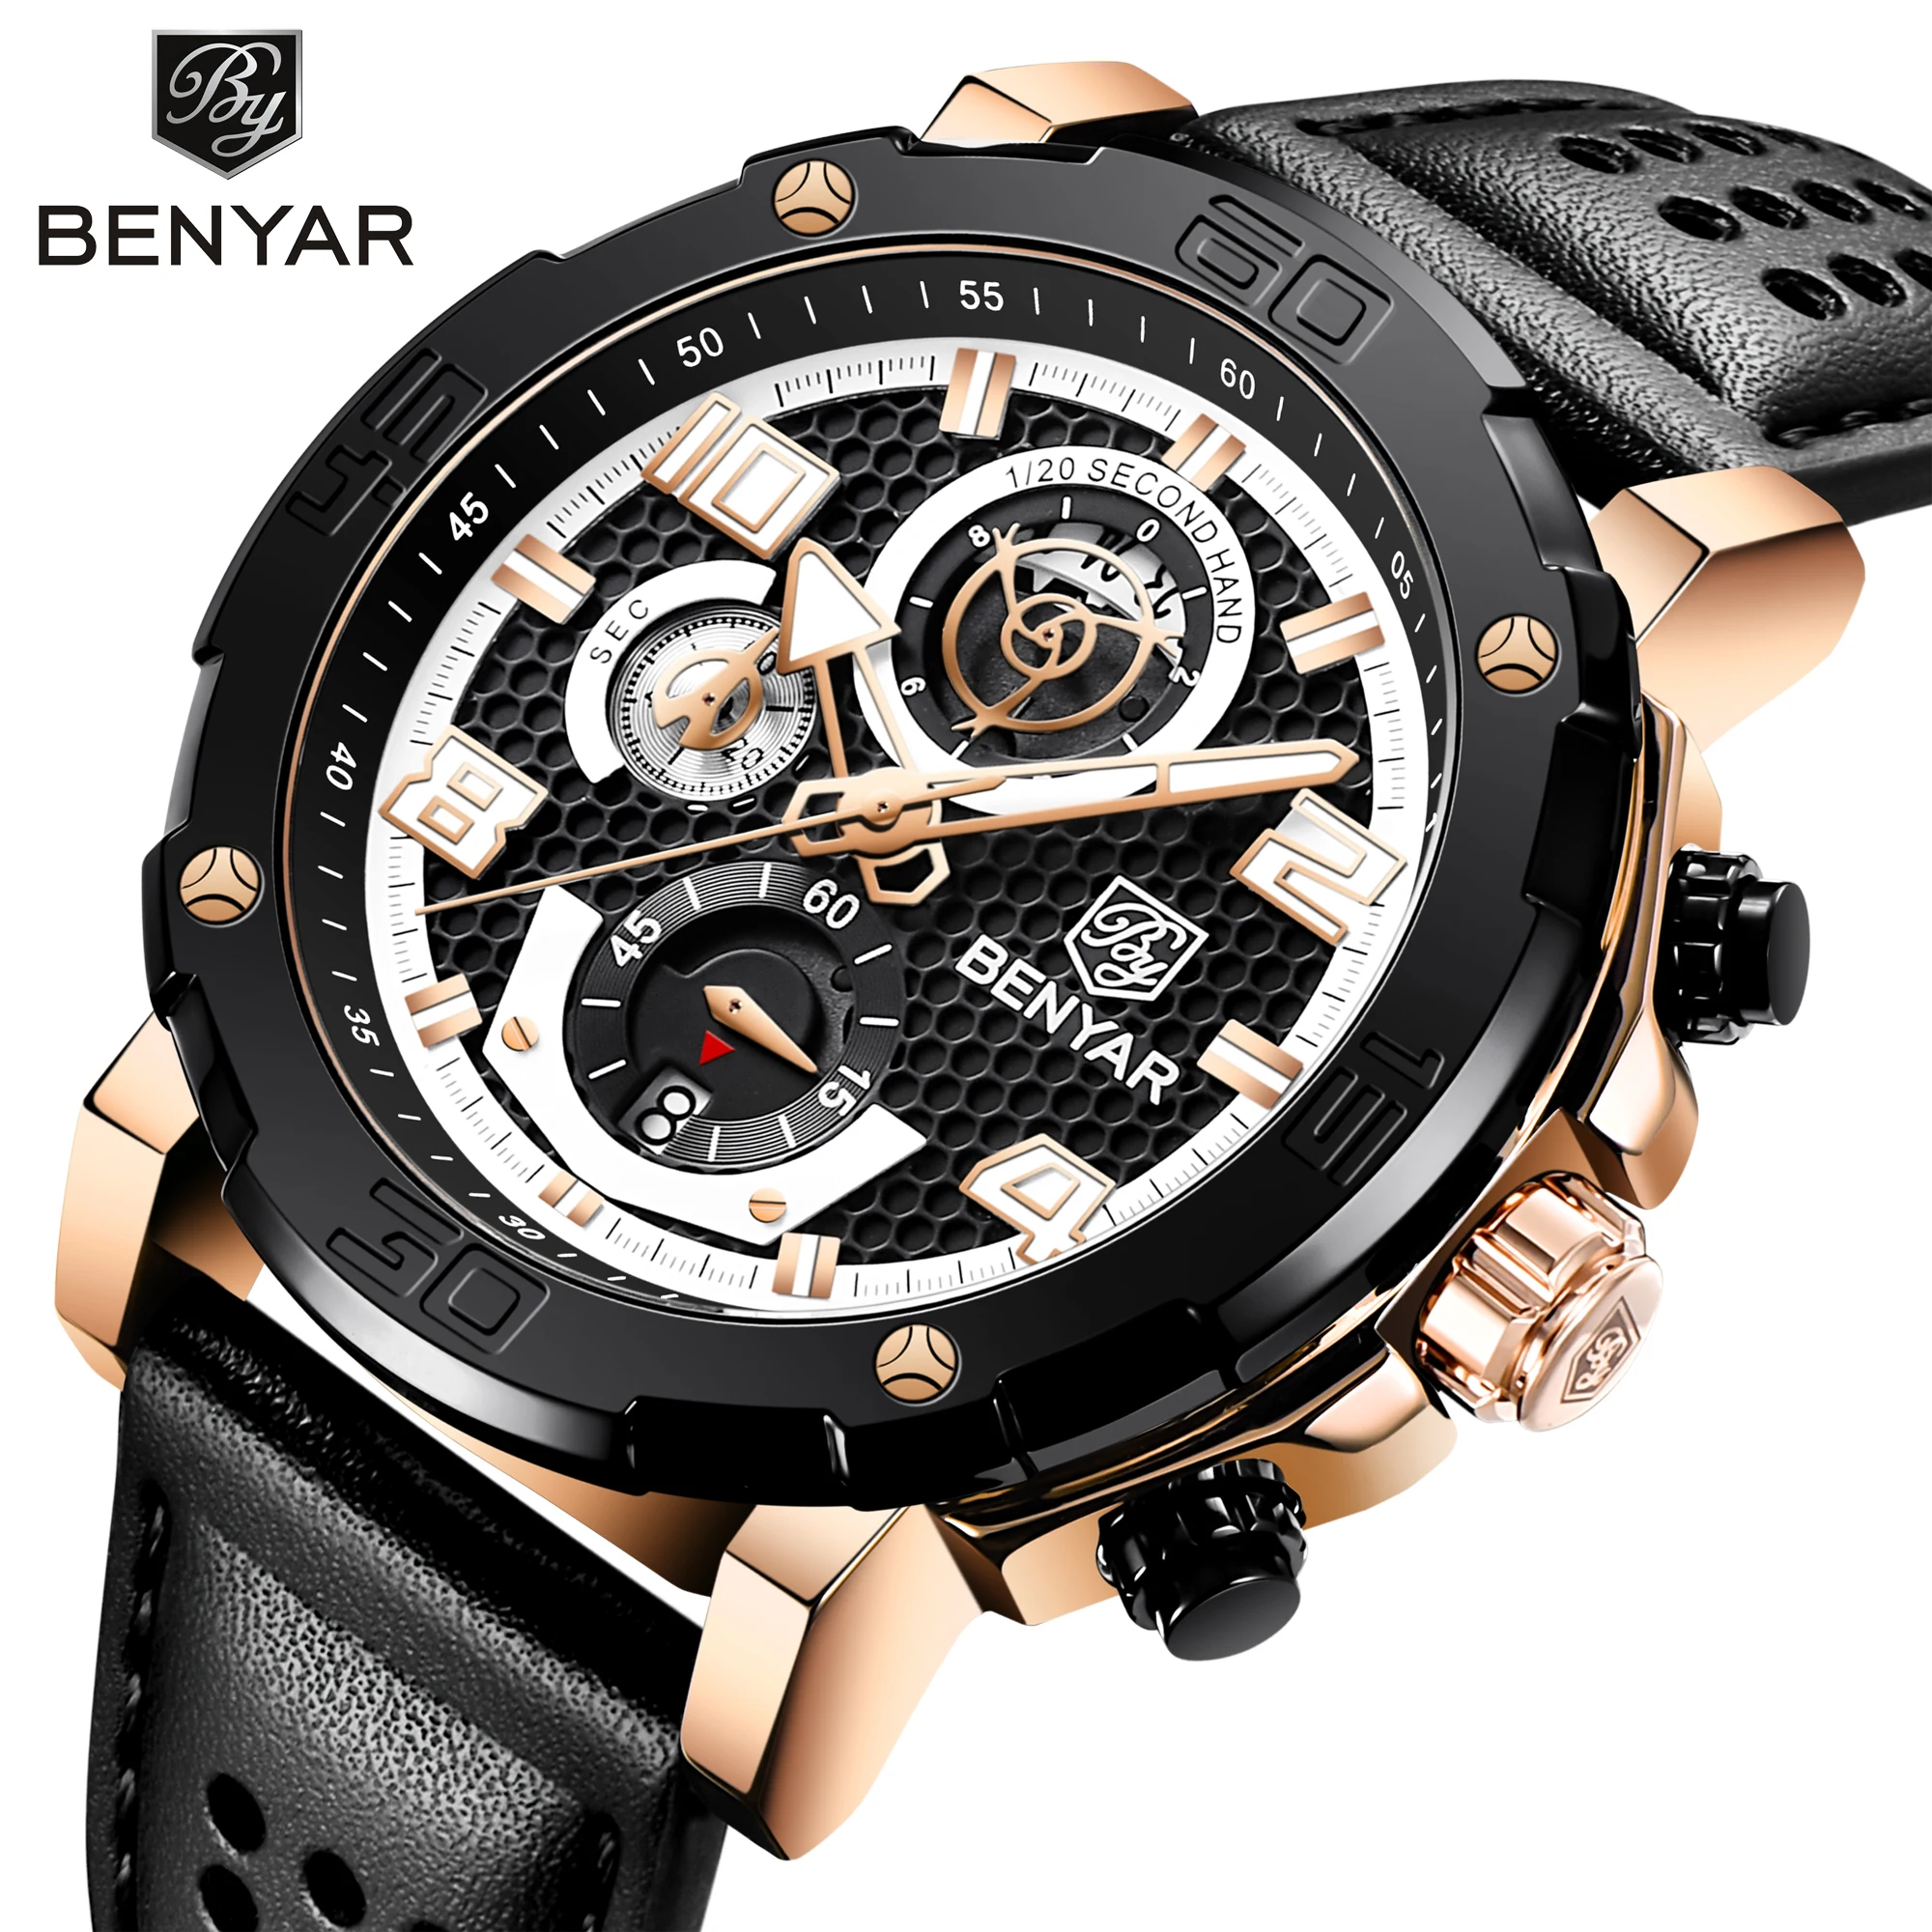 

Мужские часы BENYAR 2021 48 мм с большим циферблатом, спортивный хронограф, кварцевые наручные часы, кожаный ремешок, водонепроницаемые часы Lunminous...